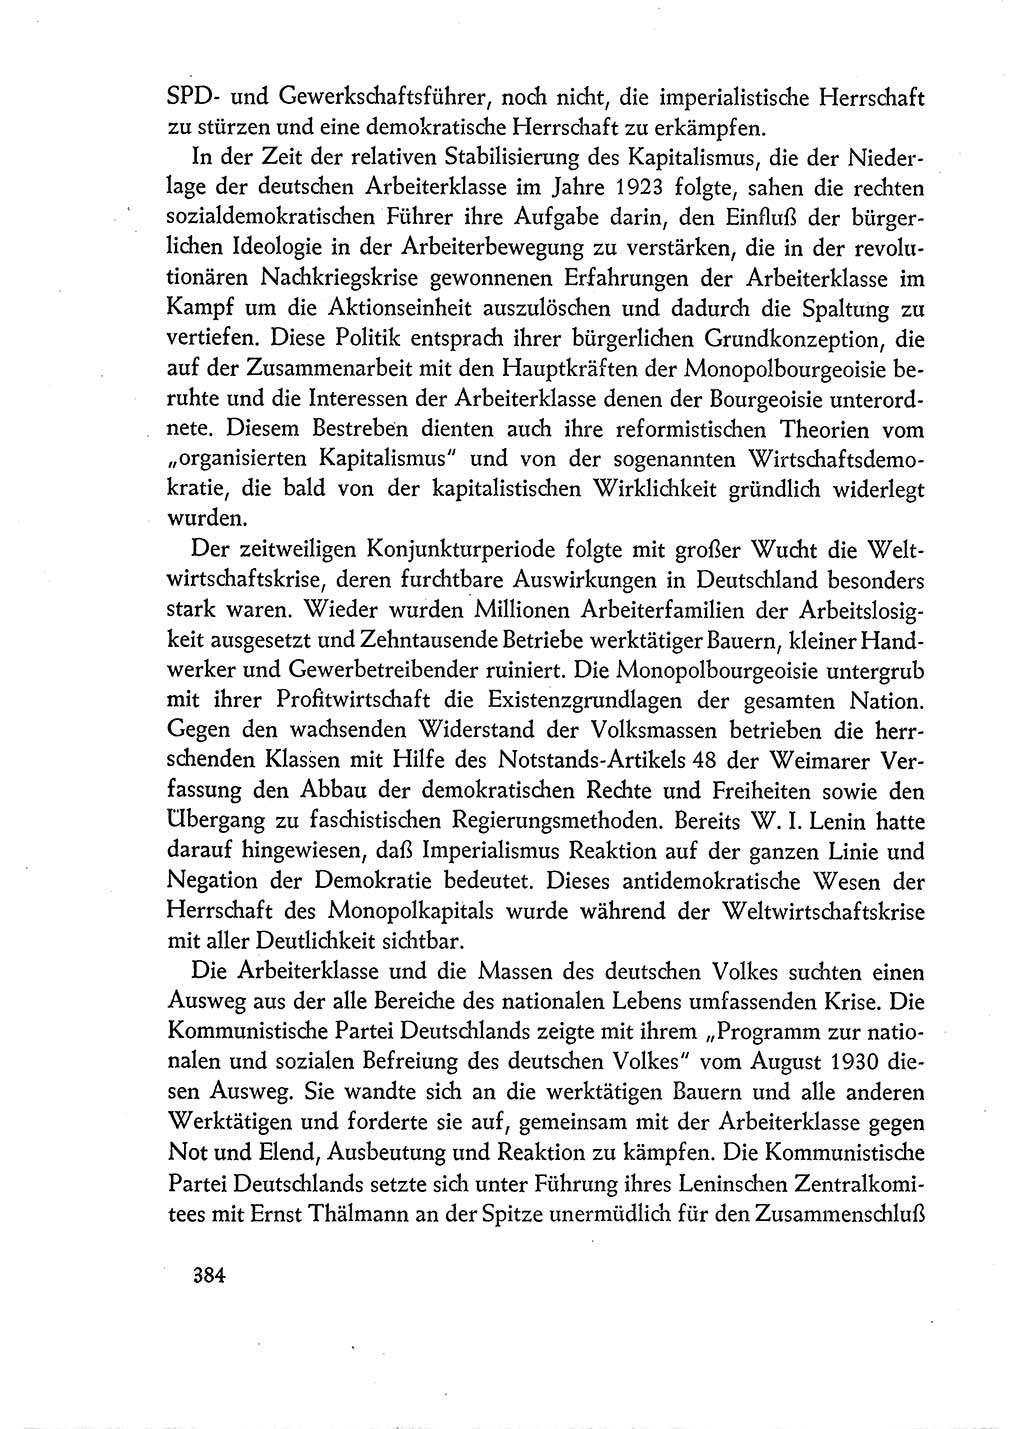 Dokumente der Sozialistischen Einheitspartei Deutschlands (SED) [Deutsche Demokratische Republik (DDR)] 1960-1961, Seite 384 (Dok. SED DDR 1960-1961, S. 384)